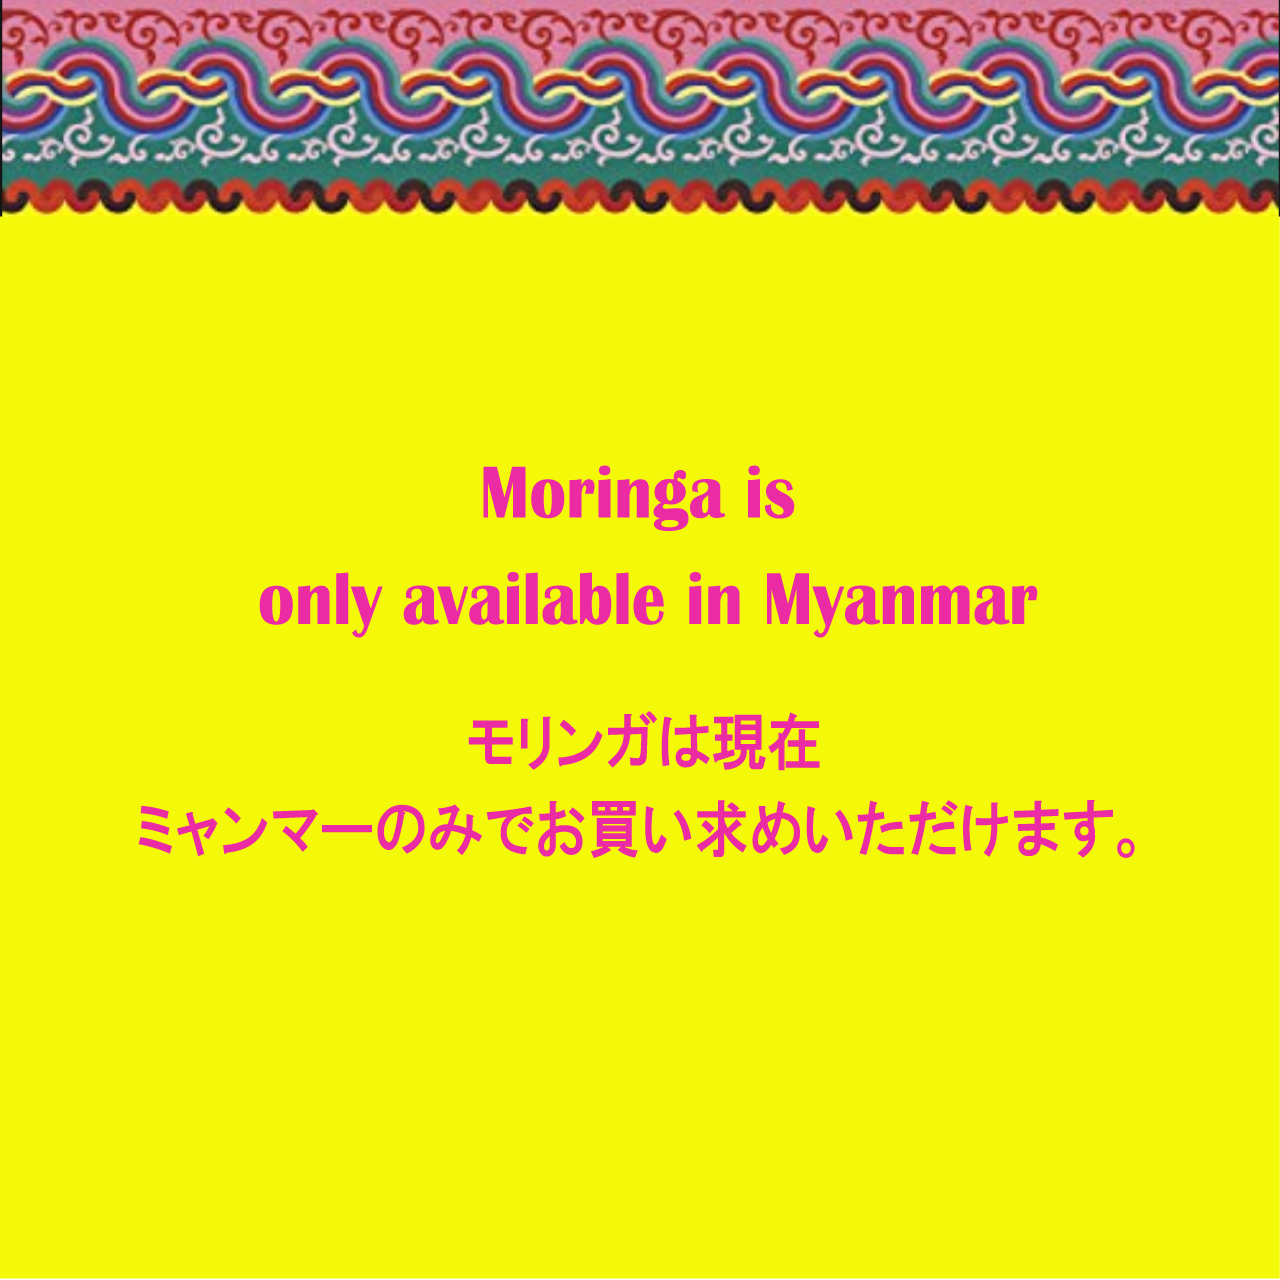 モリンガはミャンマーにてご購入いただけます。